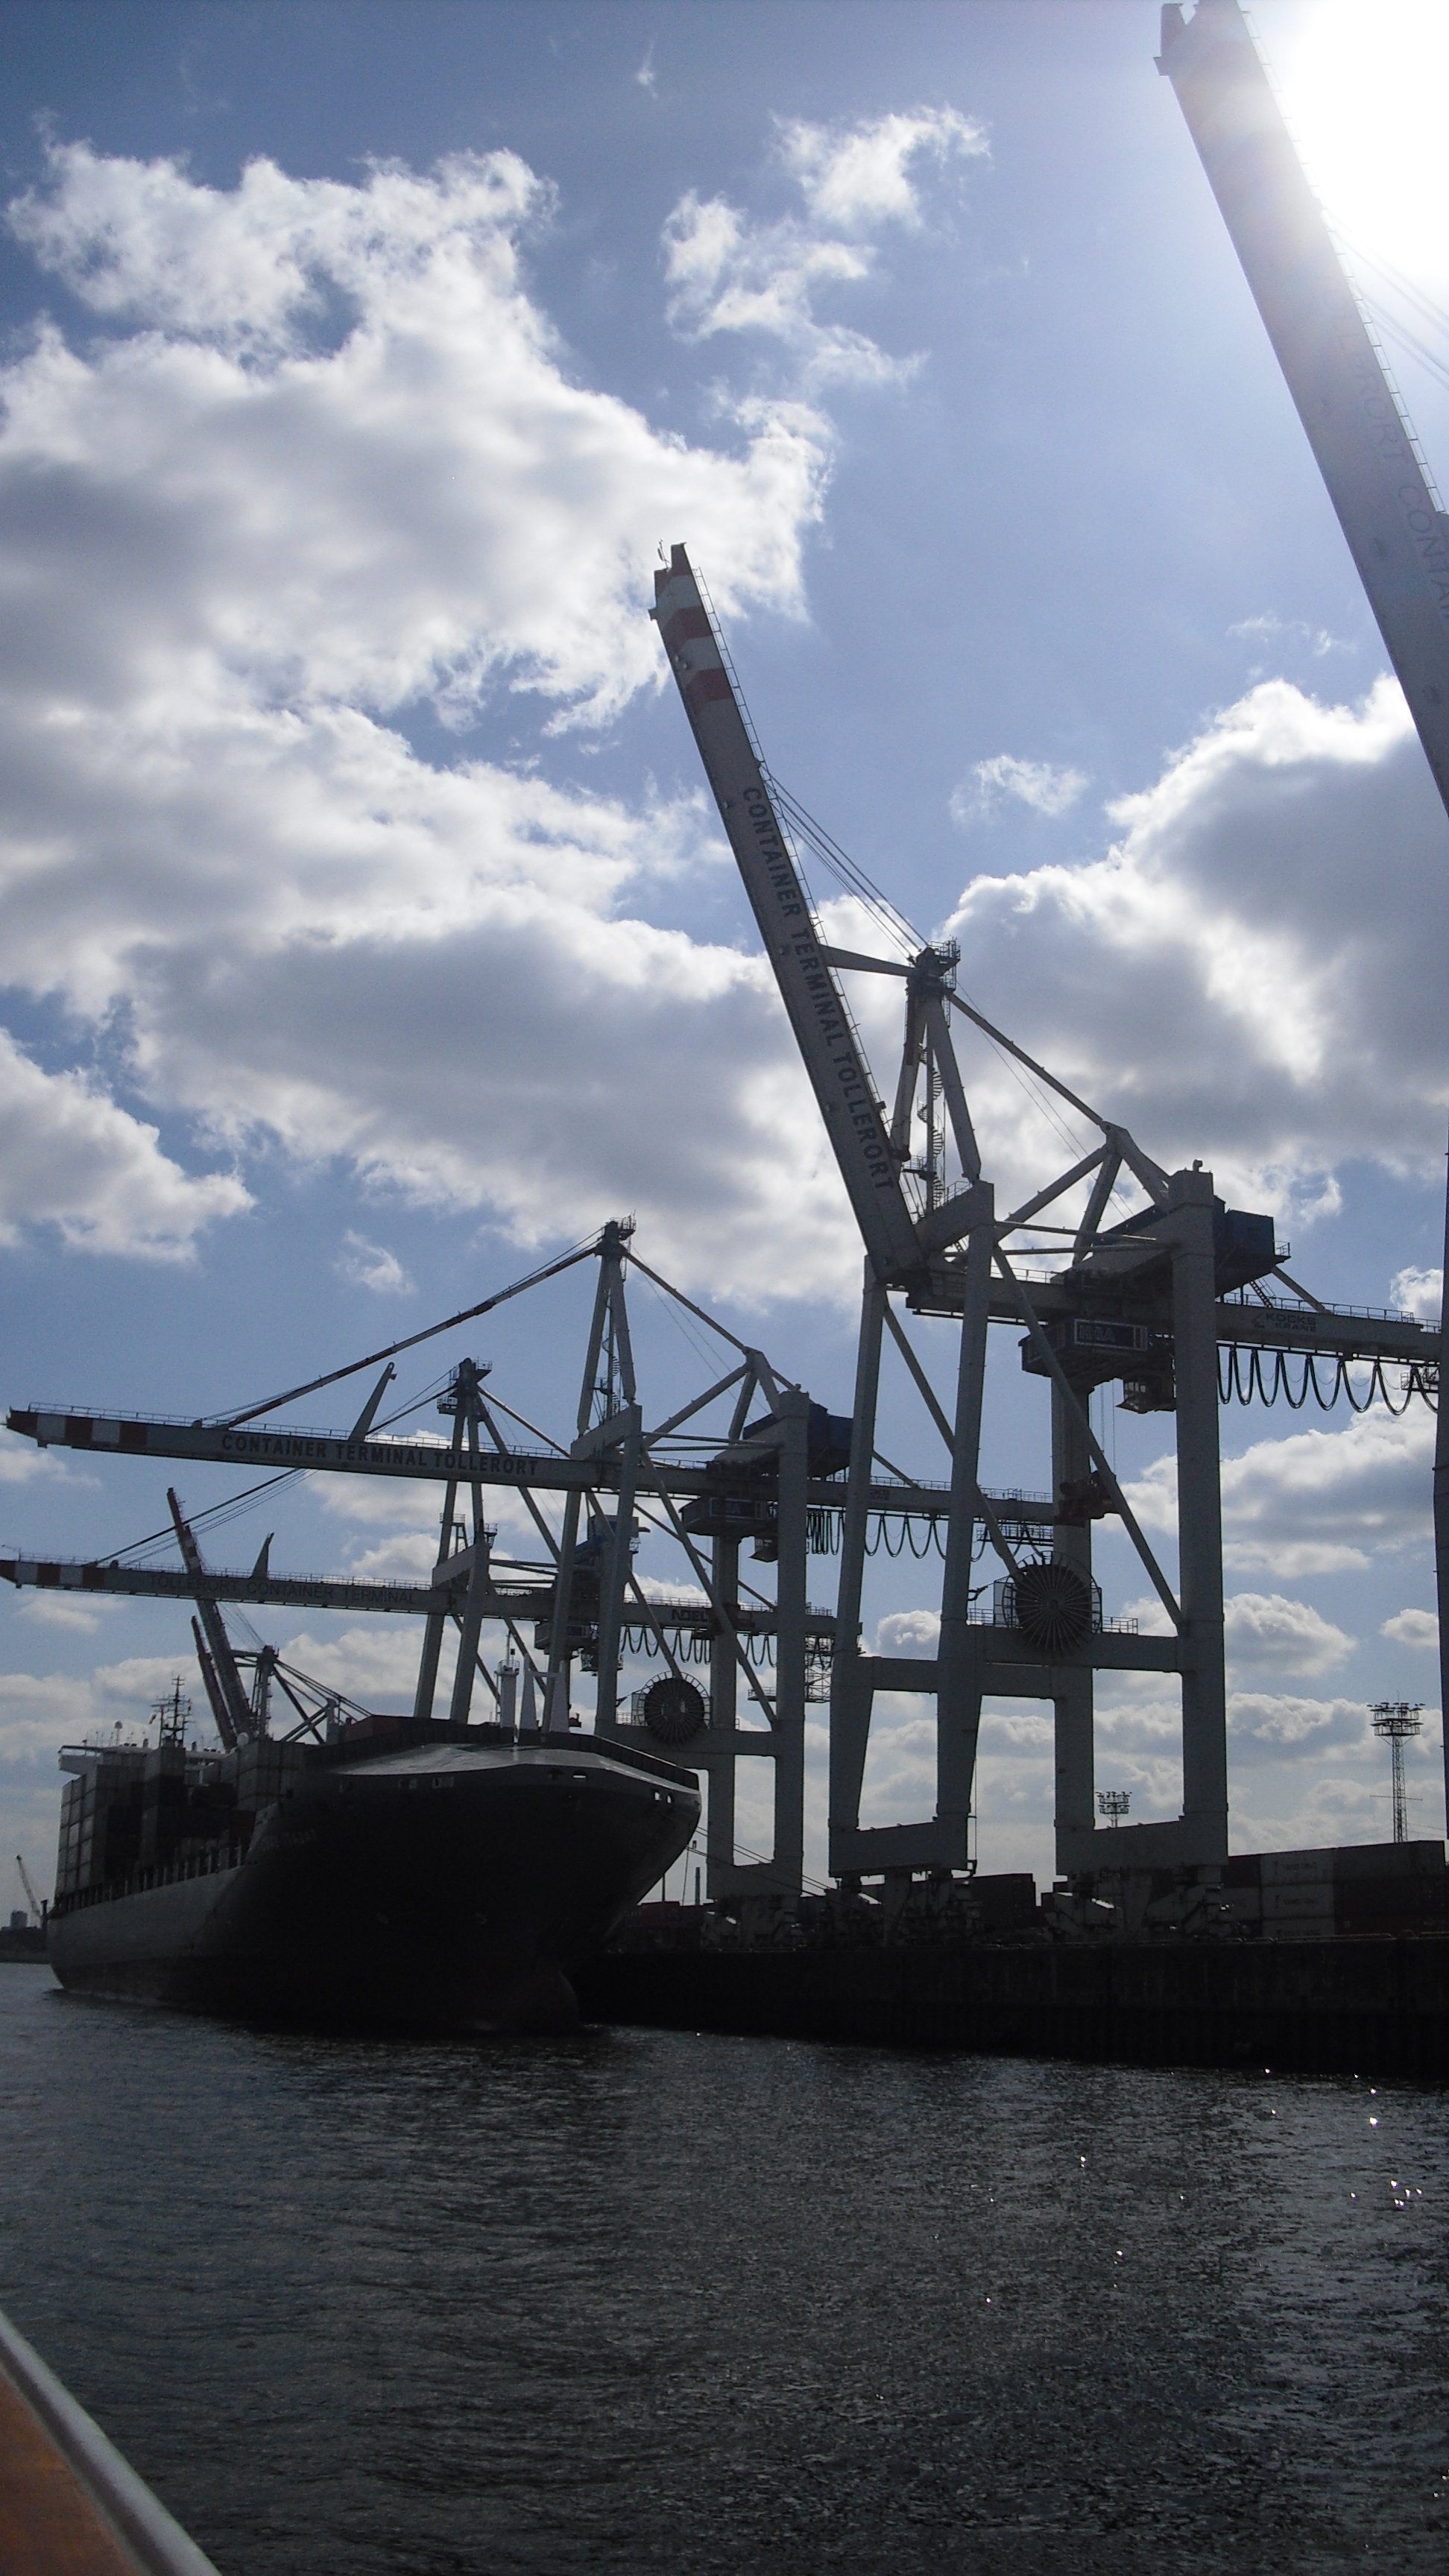 Tollerort - Das kleinste Containerterminal im Hamburger Hafen